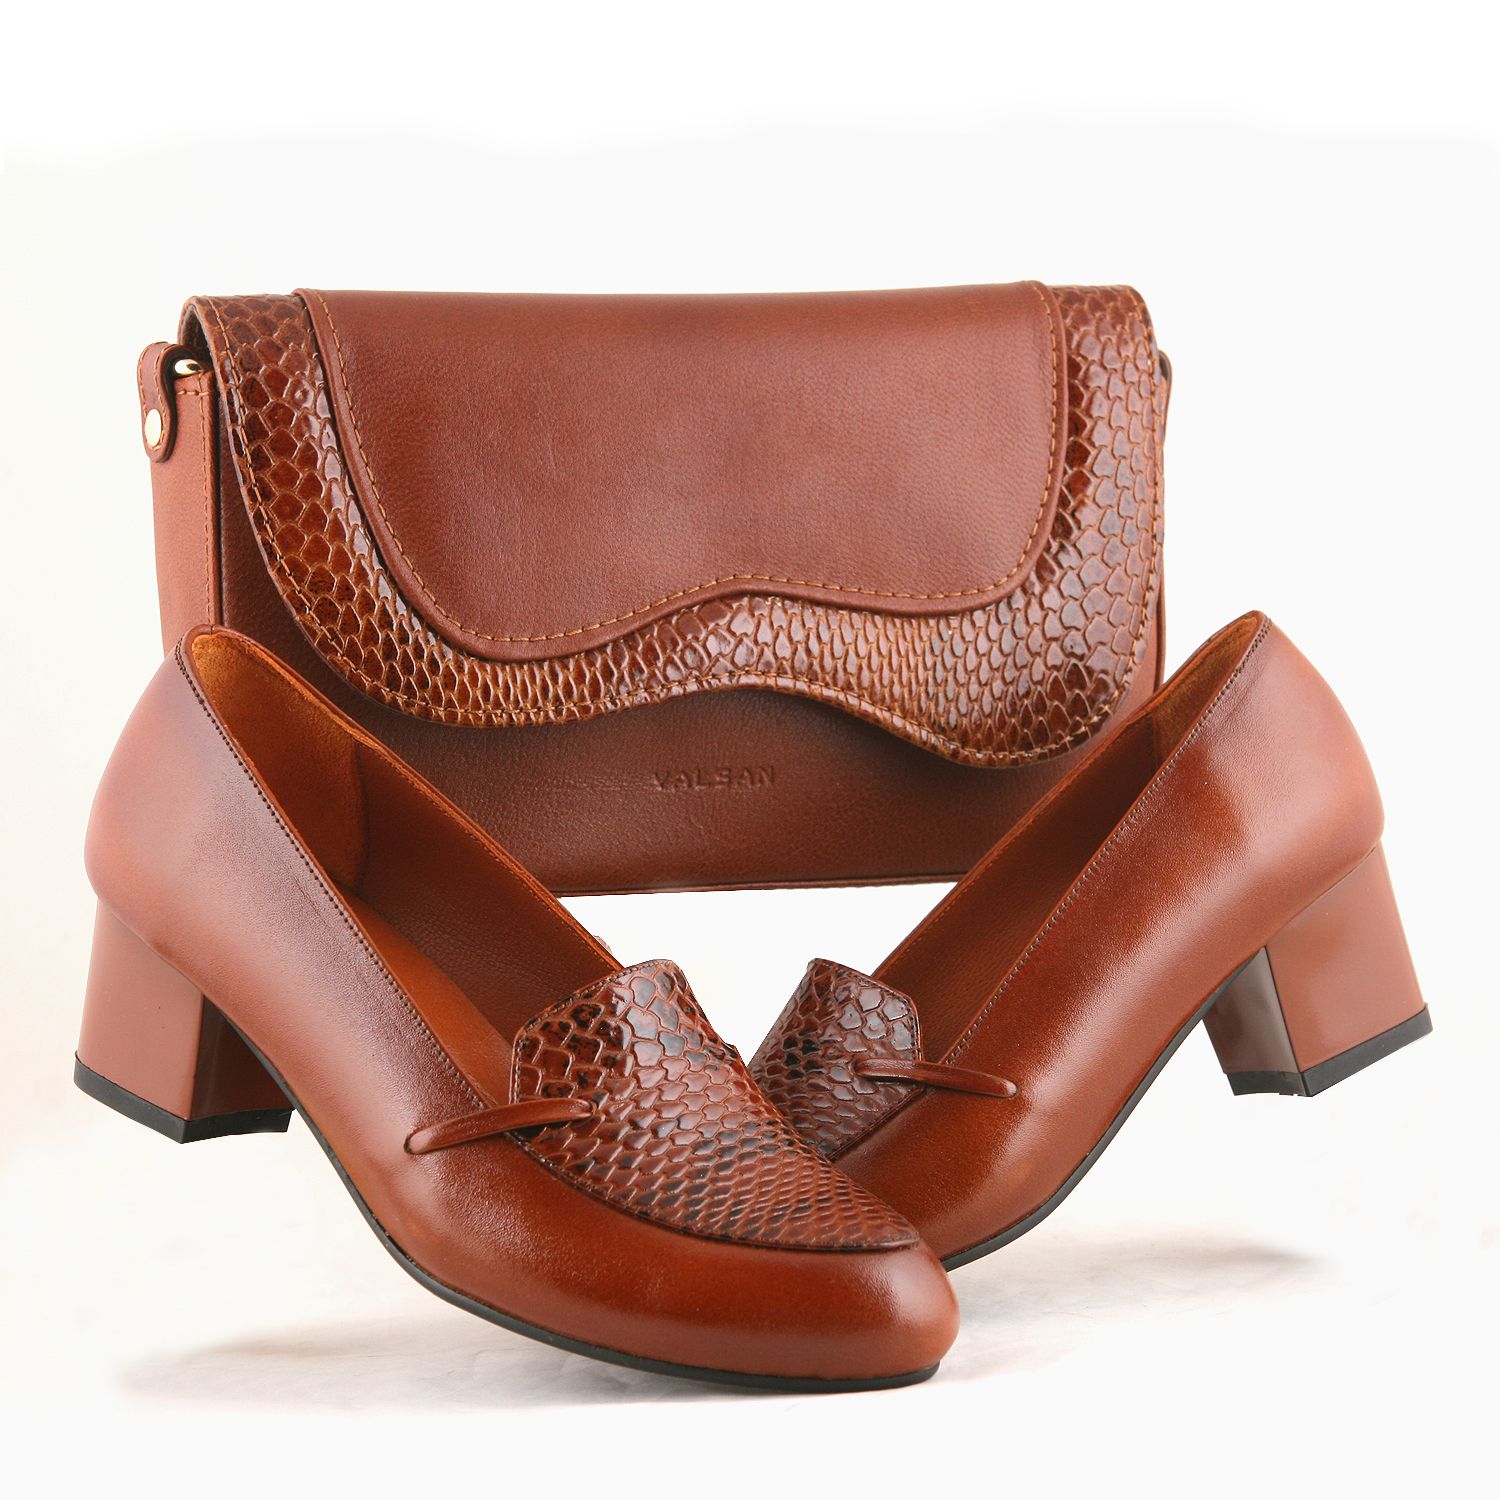 ست کیف و کفش زنانه چرم یلسان مدل هیوار کد KELARA-MRV-915-asl -  - 2